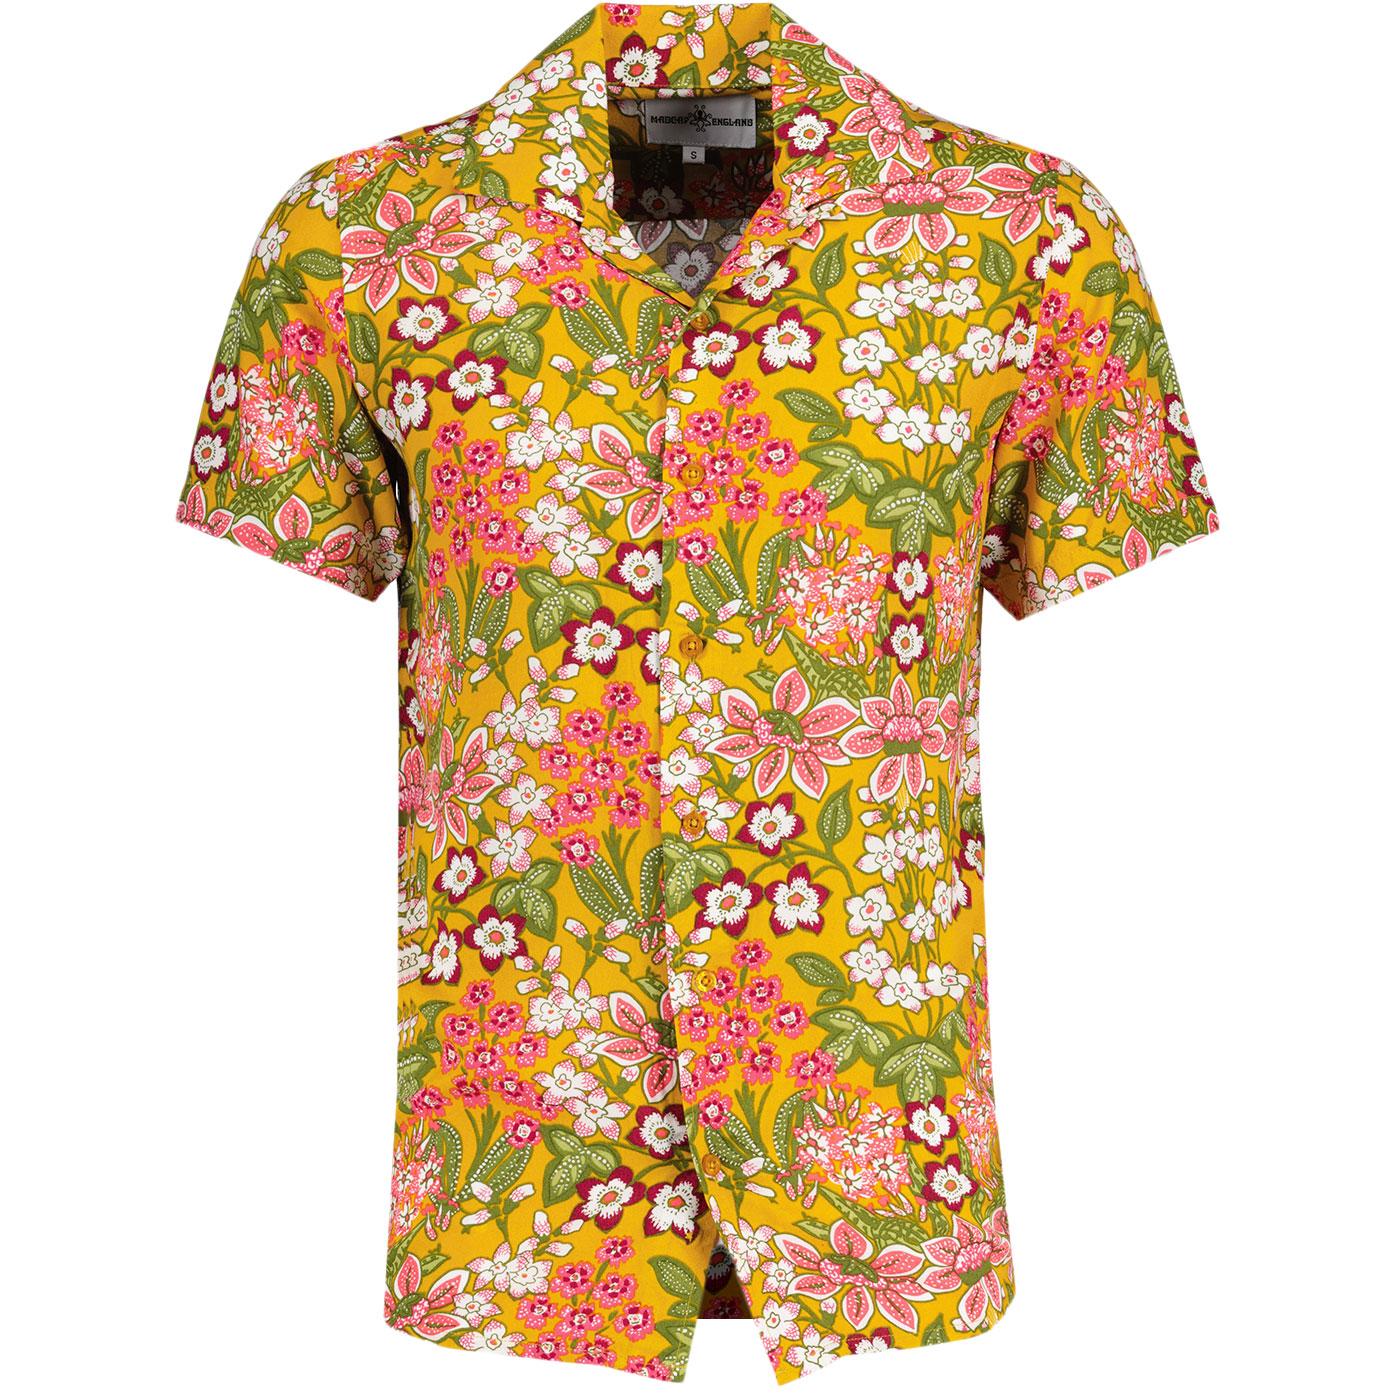 Rock-a-Hula Madcap England Floral Hawaiian Shirt